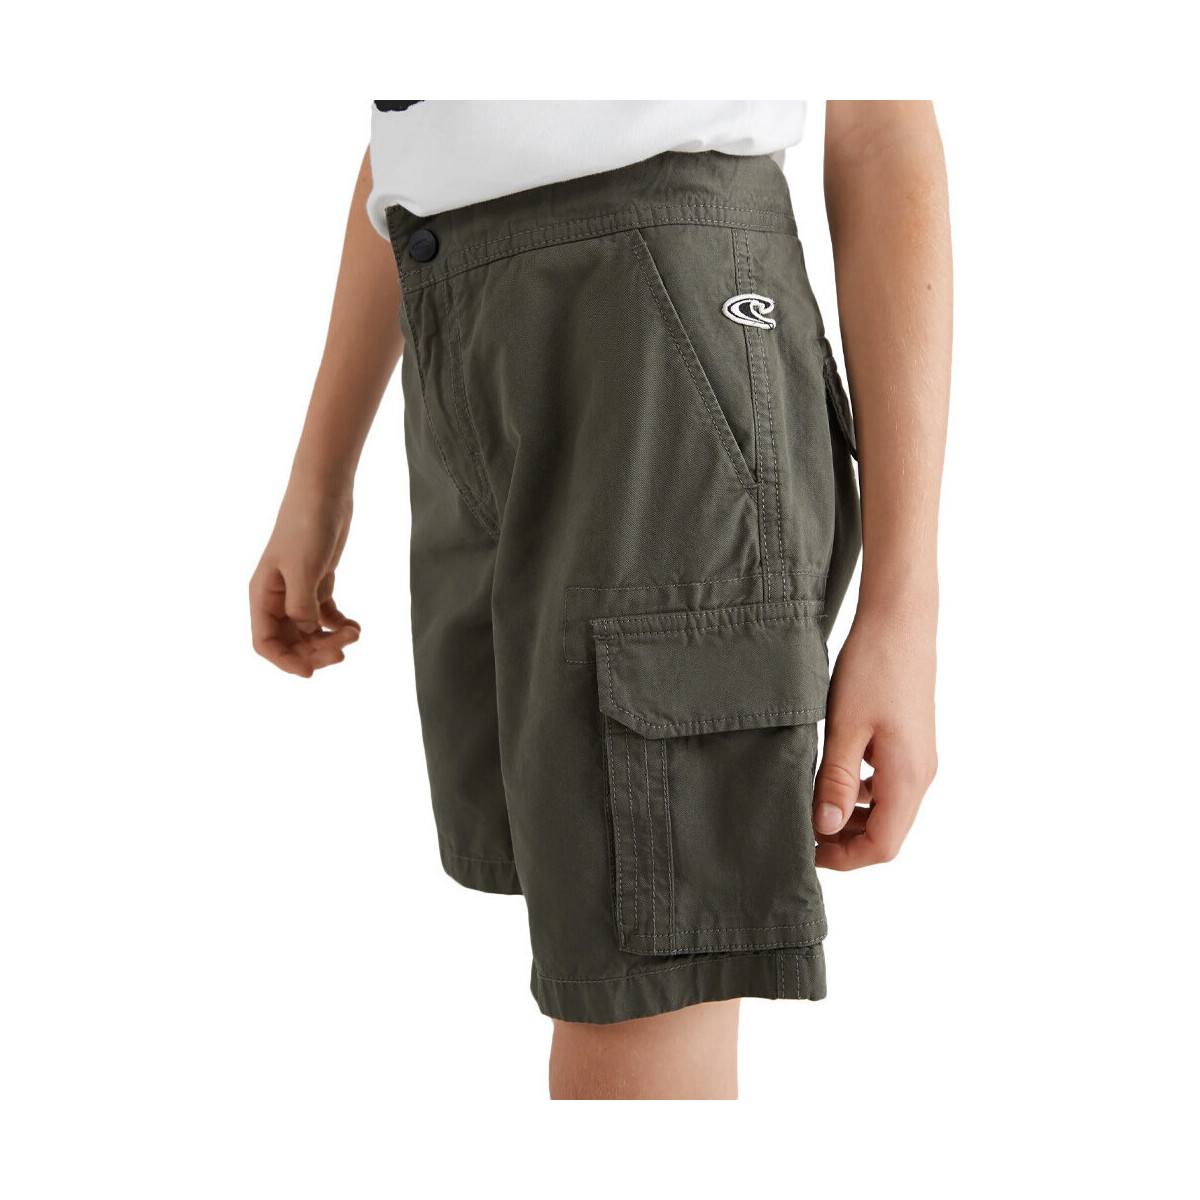 Vêtements Garçon legging Shorts / Bermudas O'neill N4700002-18014 Vert